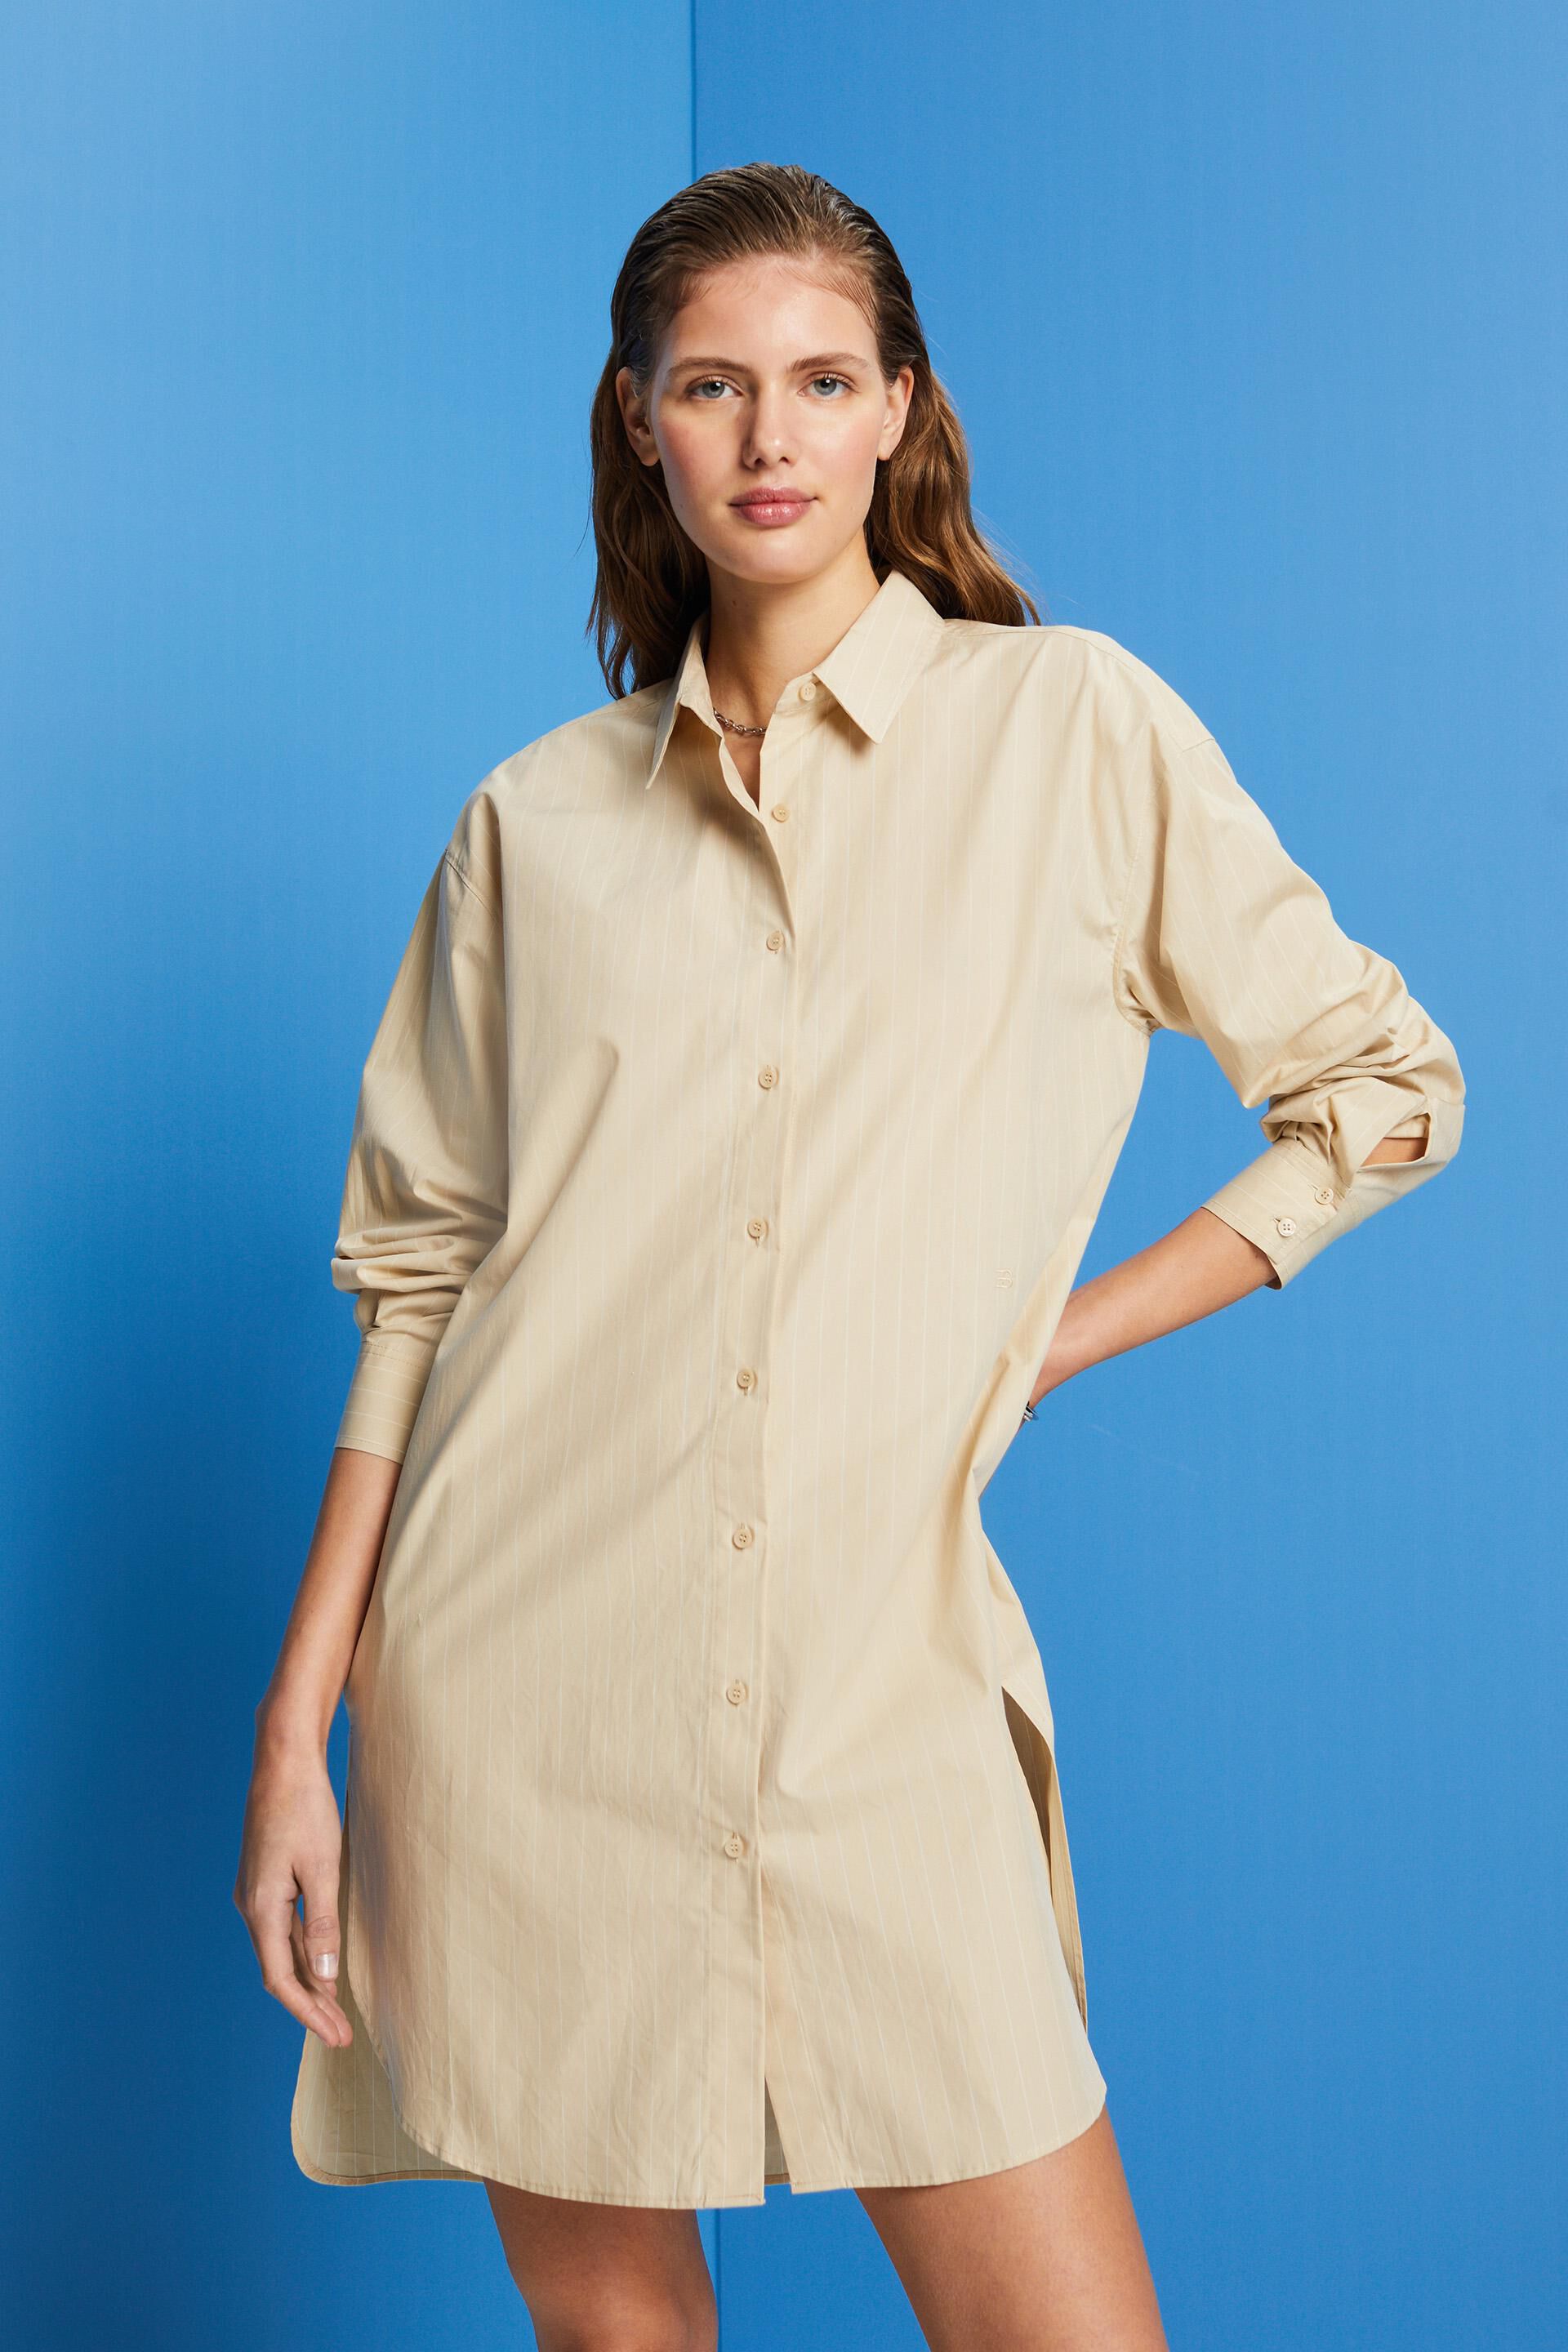 Esprit shirt cotton dress, 100% Pinstriped